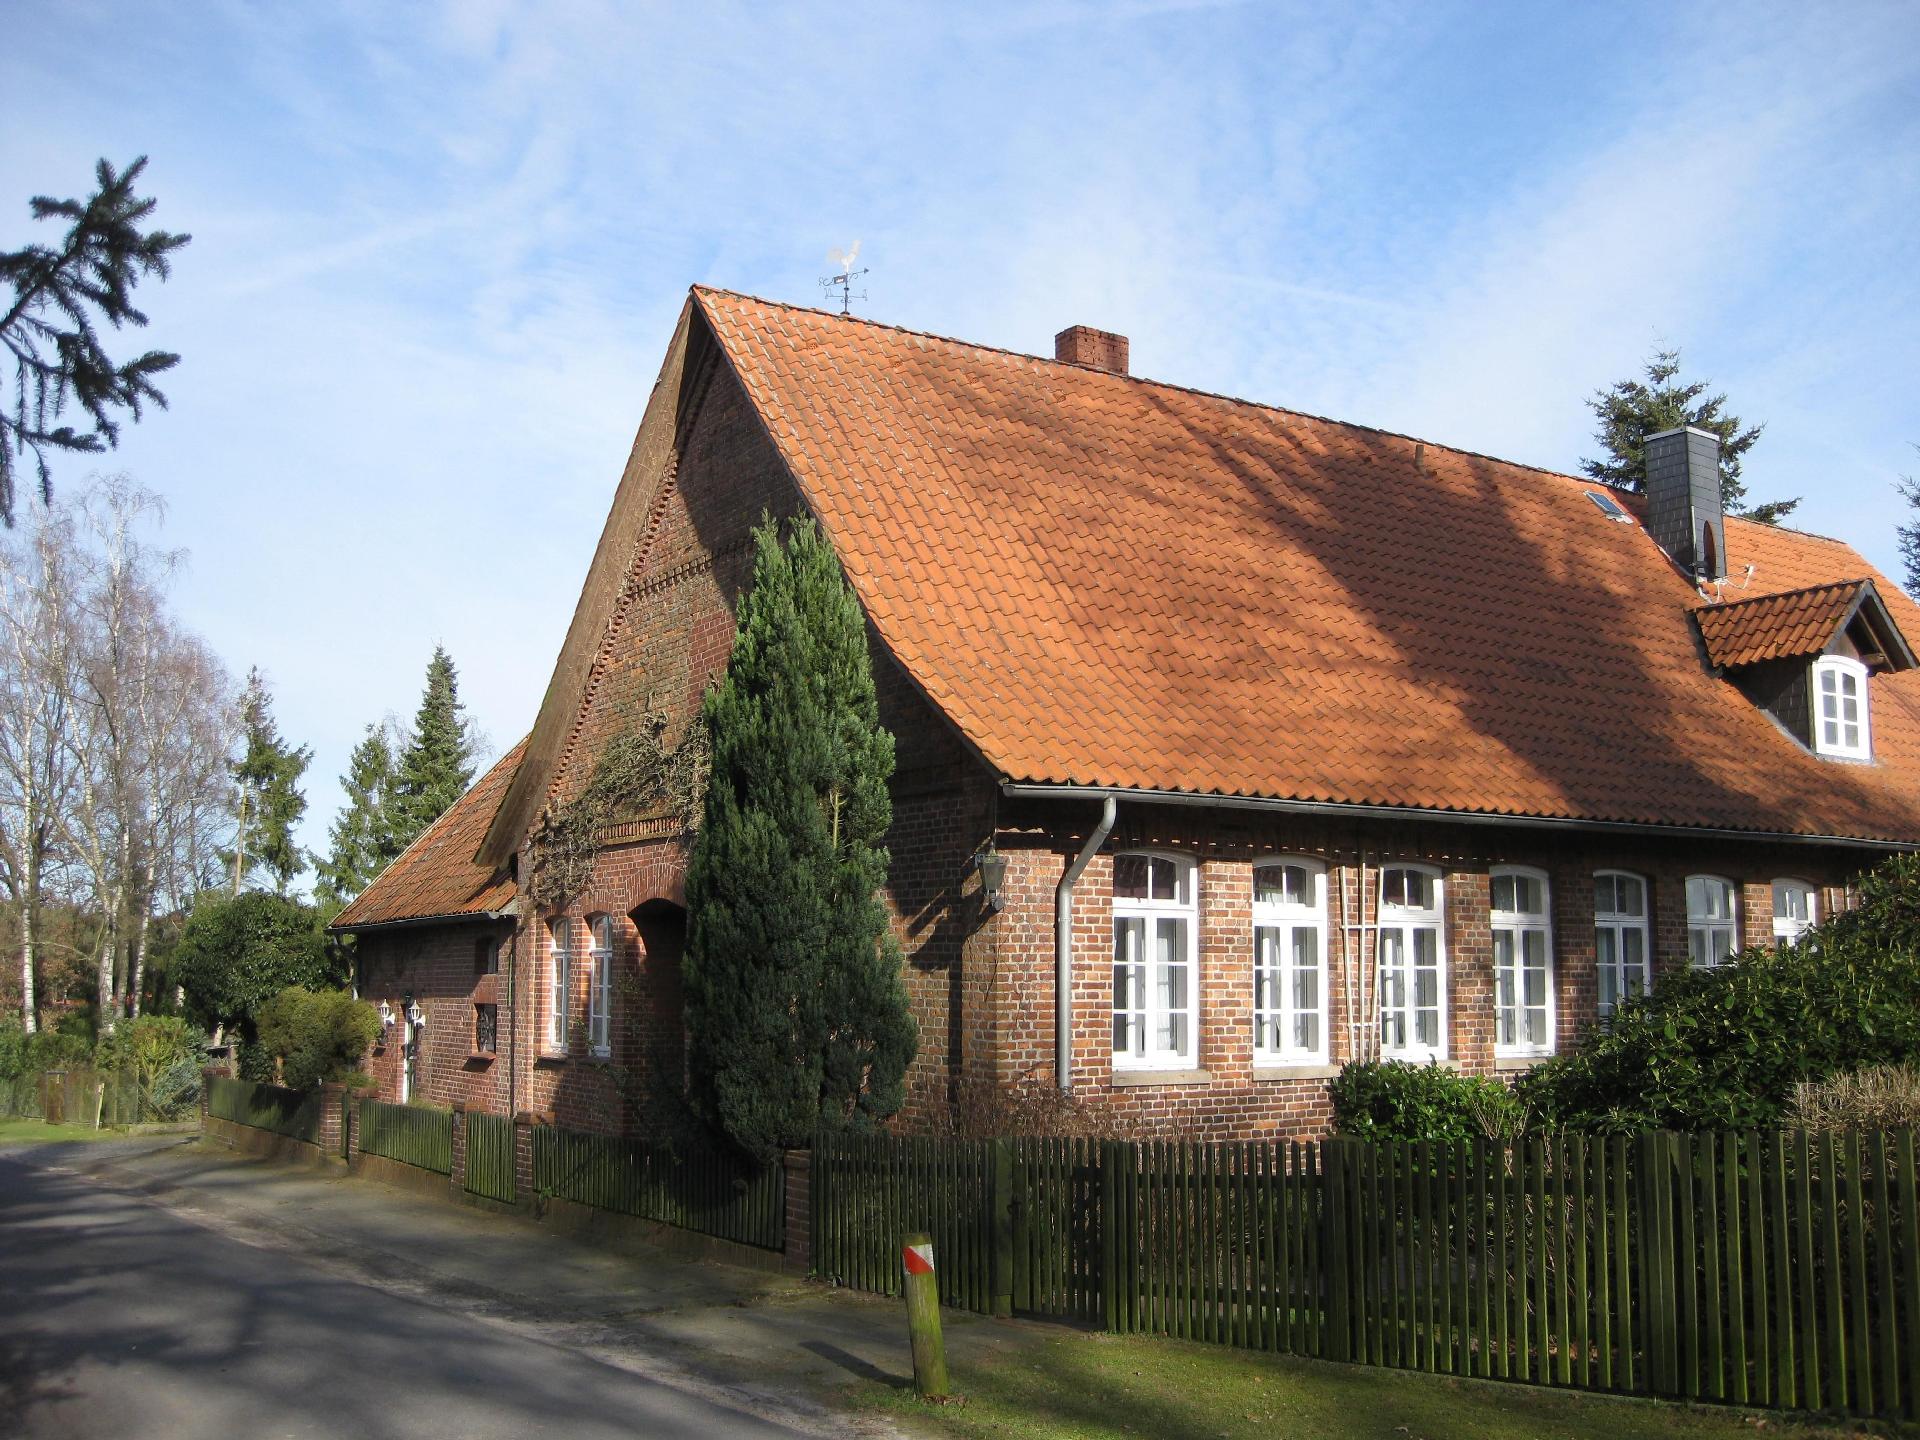 Ferienwohnung in ehemaliger Dorfschule am Dorfrand Ferienhaus in Deutschland